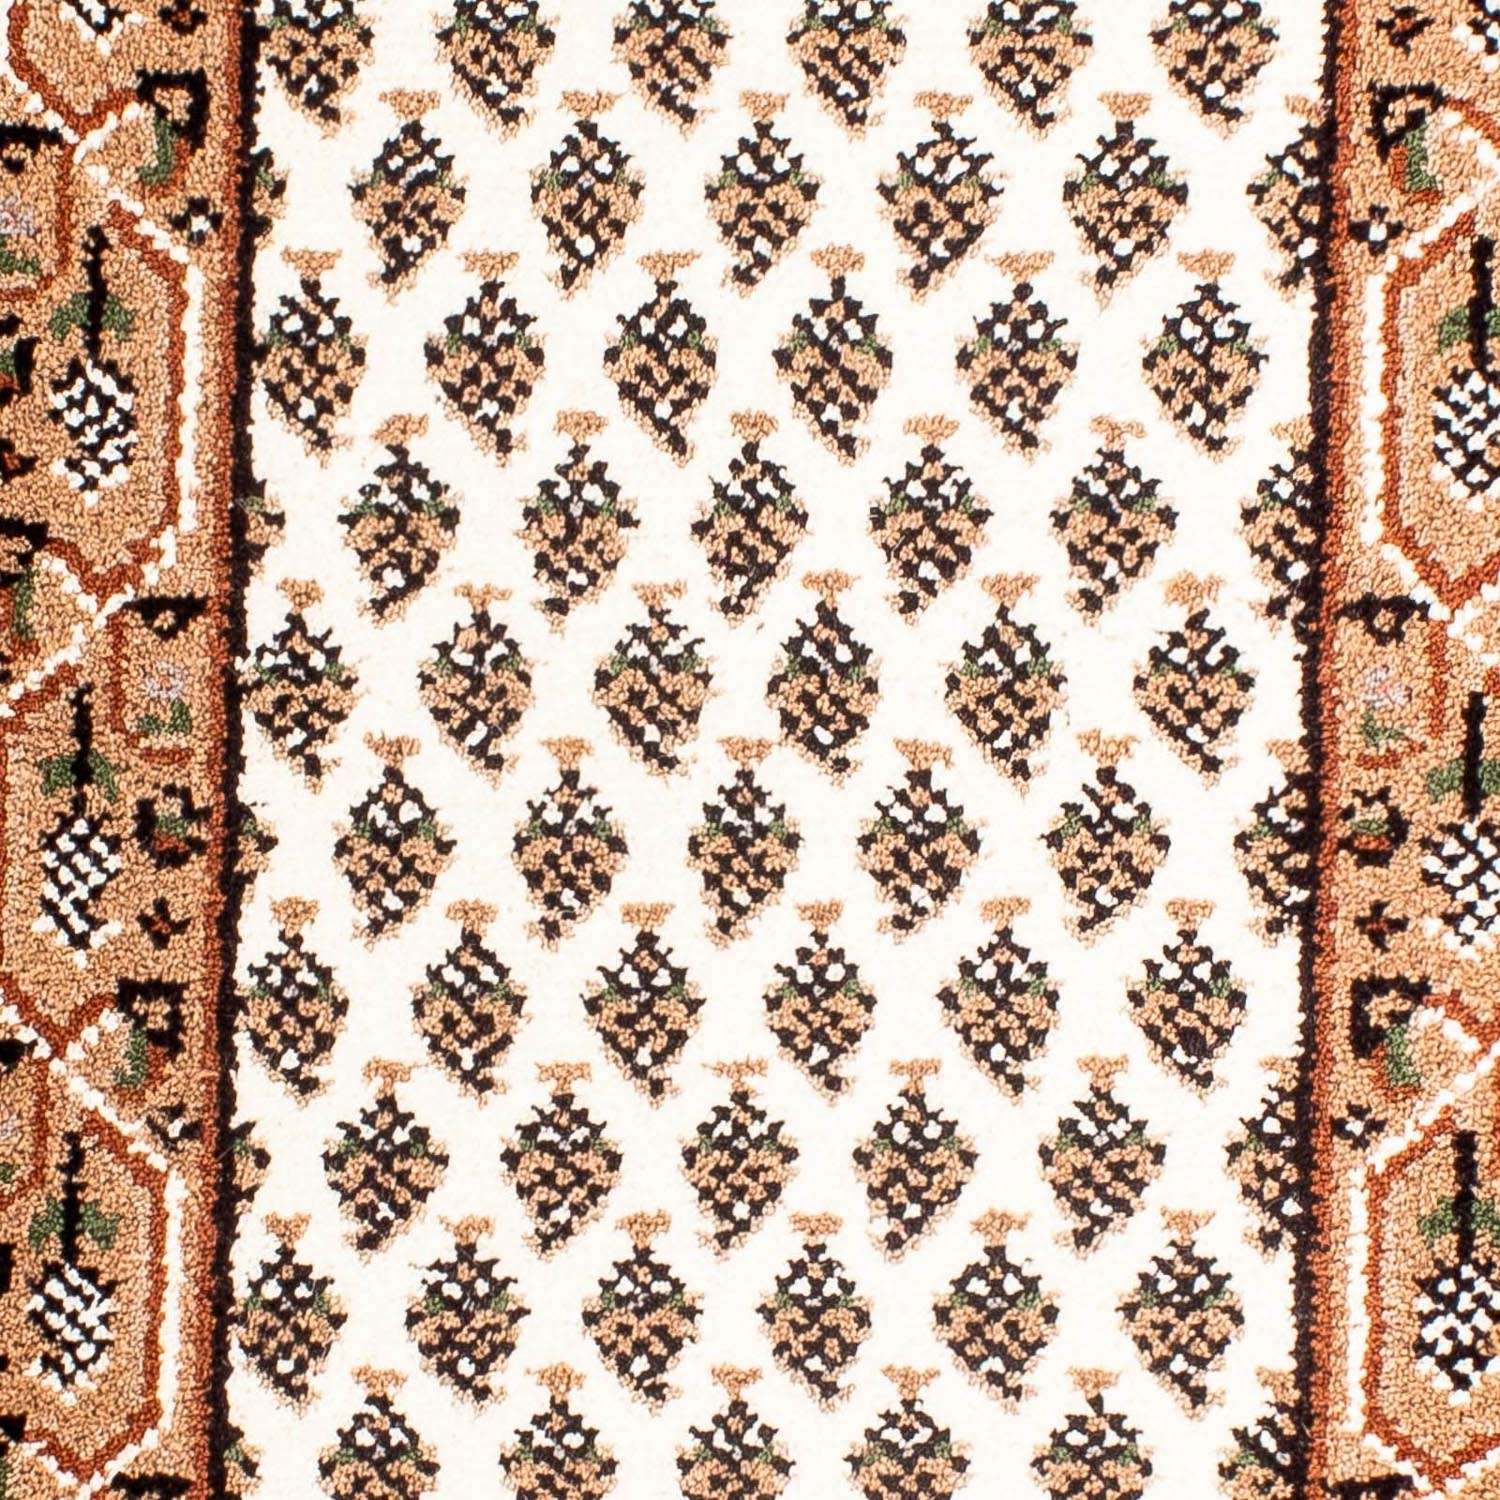 Wool Rug - 91 x 61 cm - beige